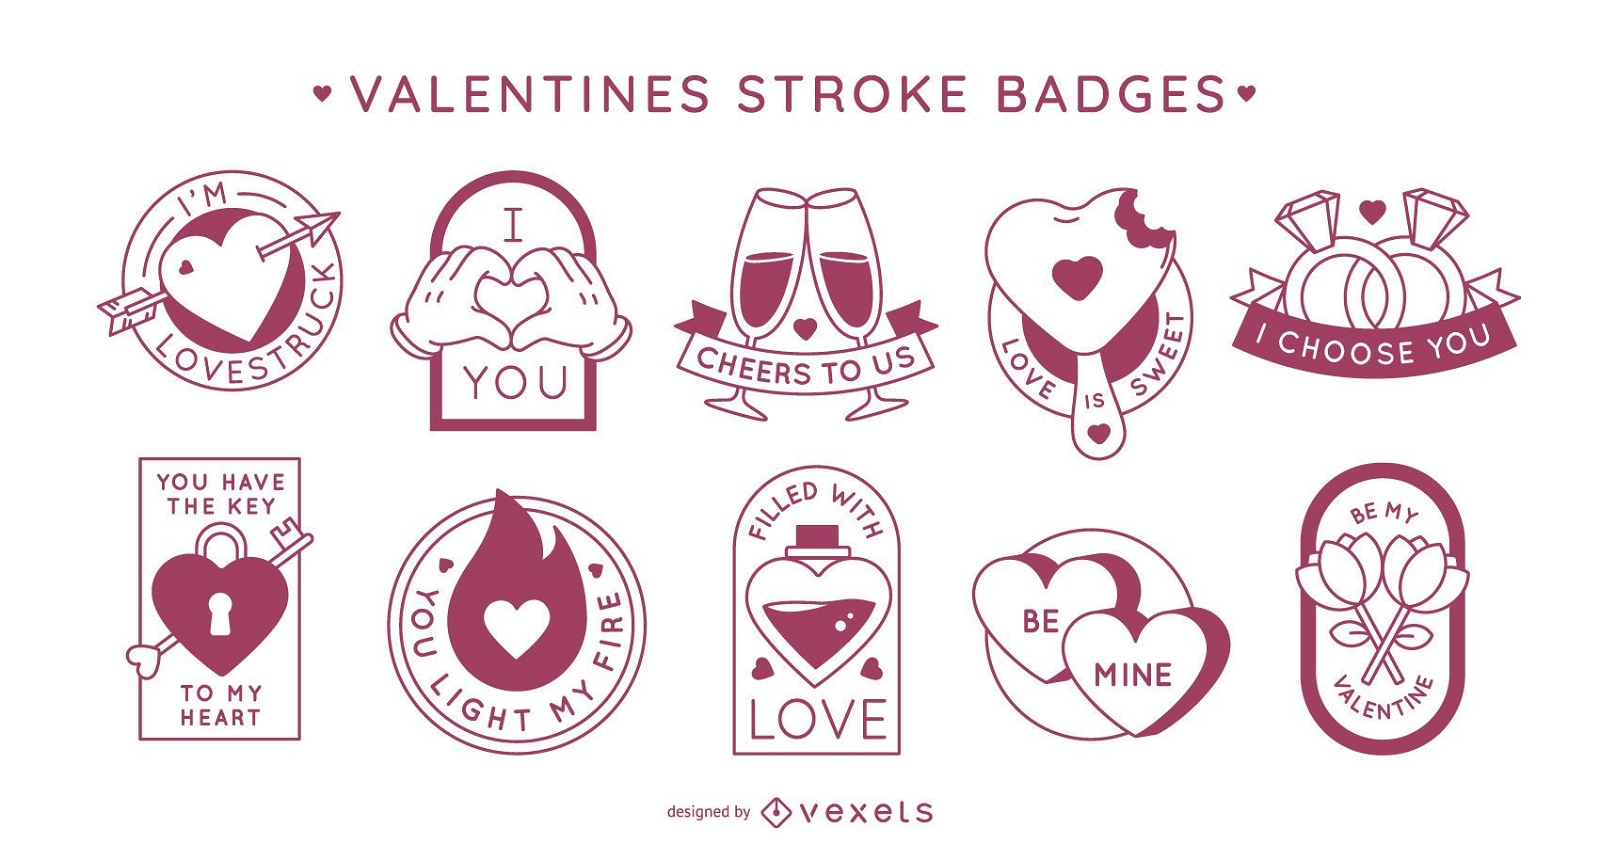 Valentine's day stroke badges